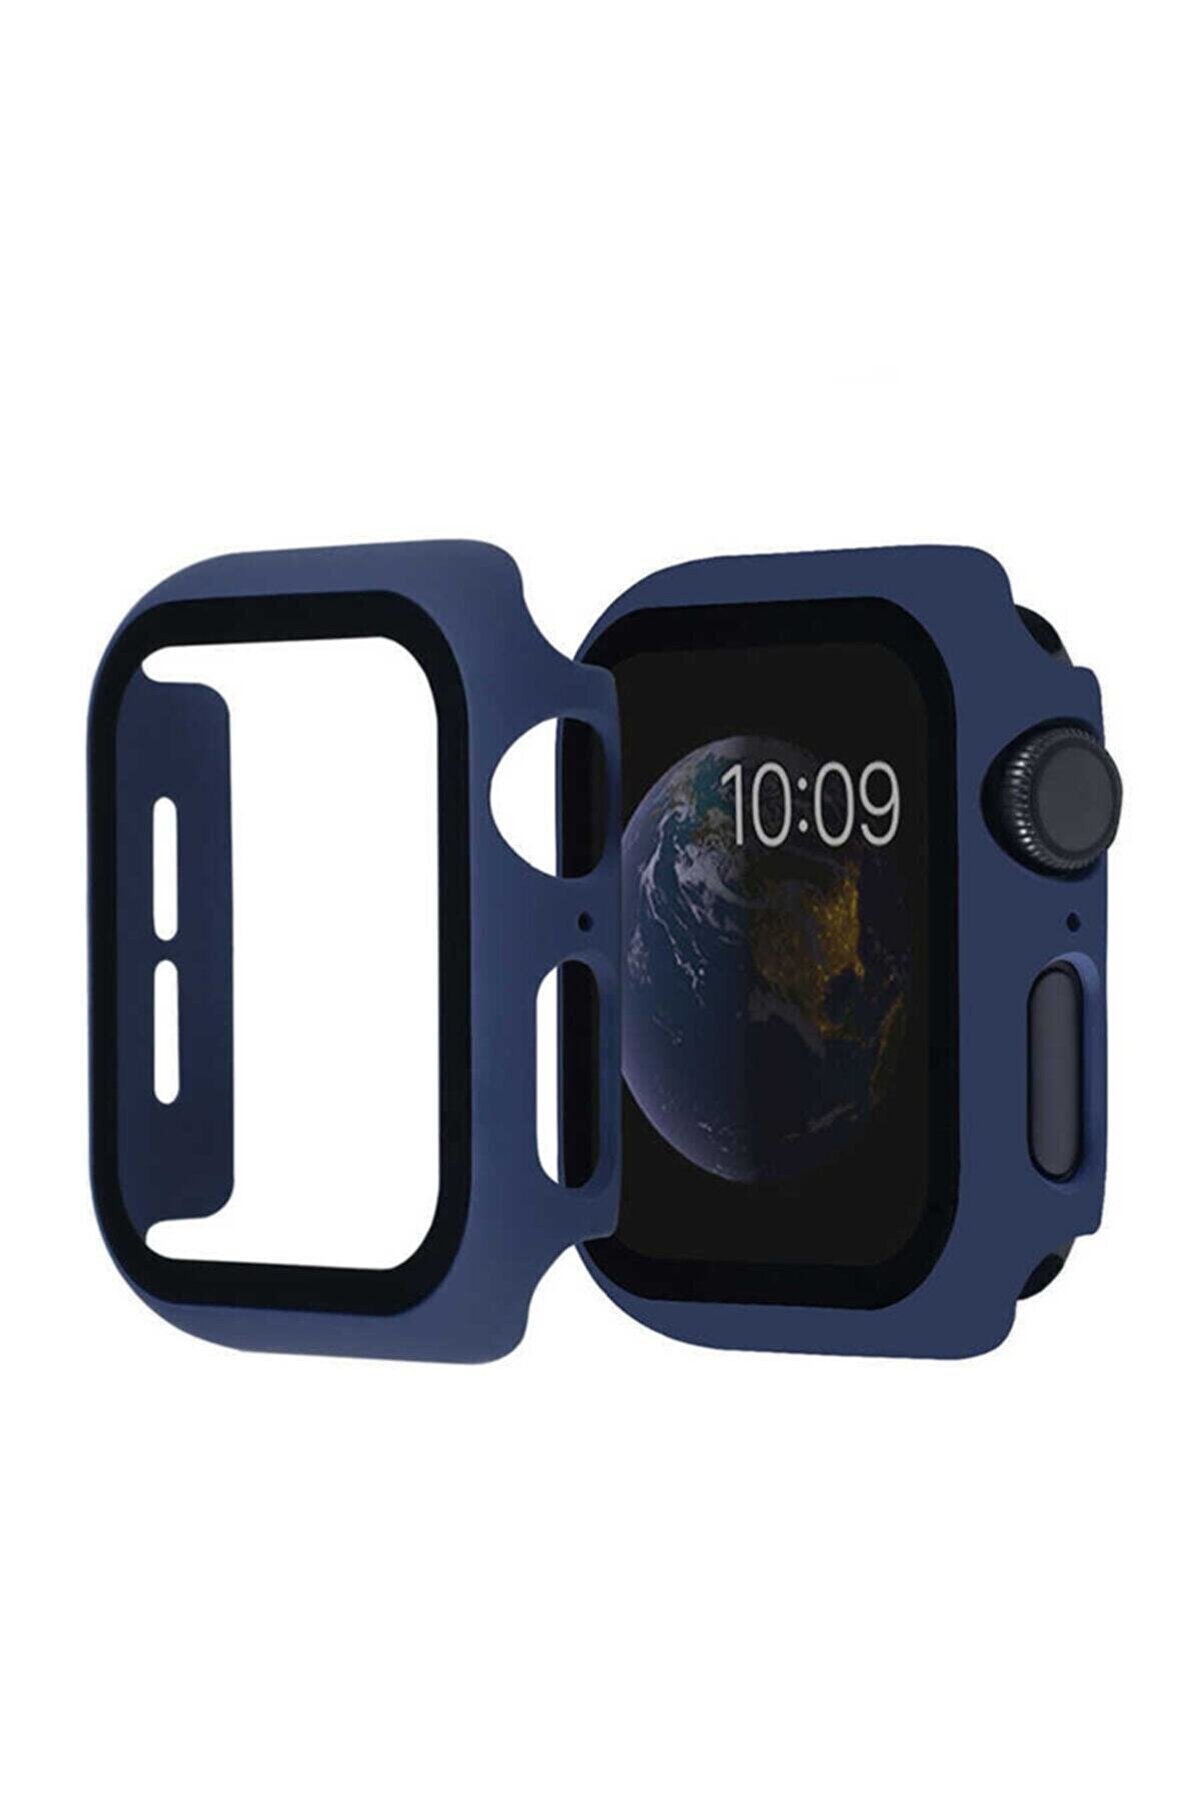 Nezih Case Apple Watch Seri 2 3 4 5 6 Se 44mm Kasa Ve Ekran Koruyucu 360 Tam Koruma Gard Lacivert